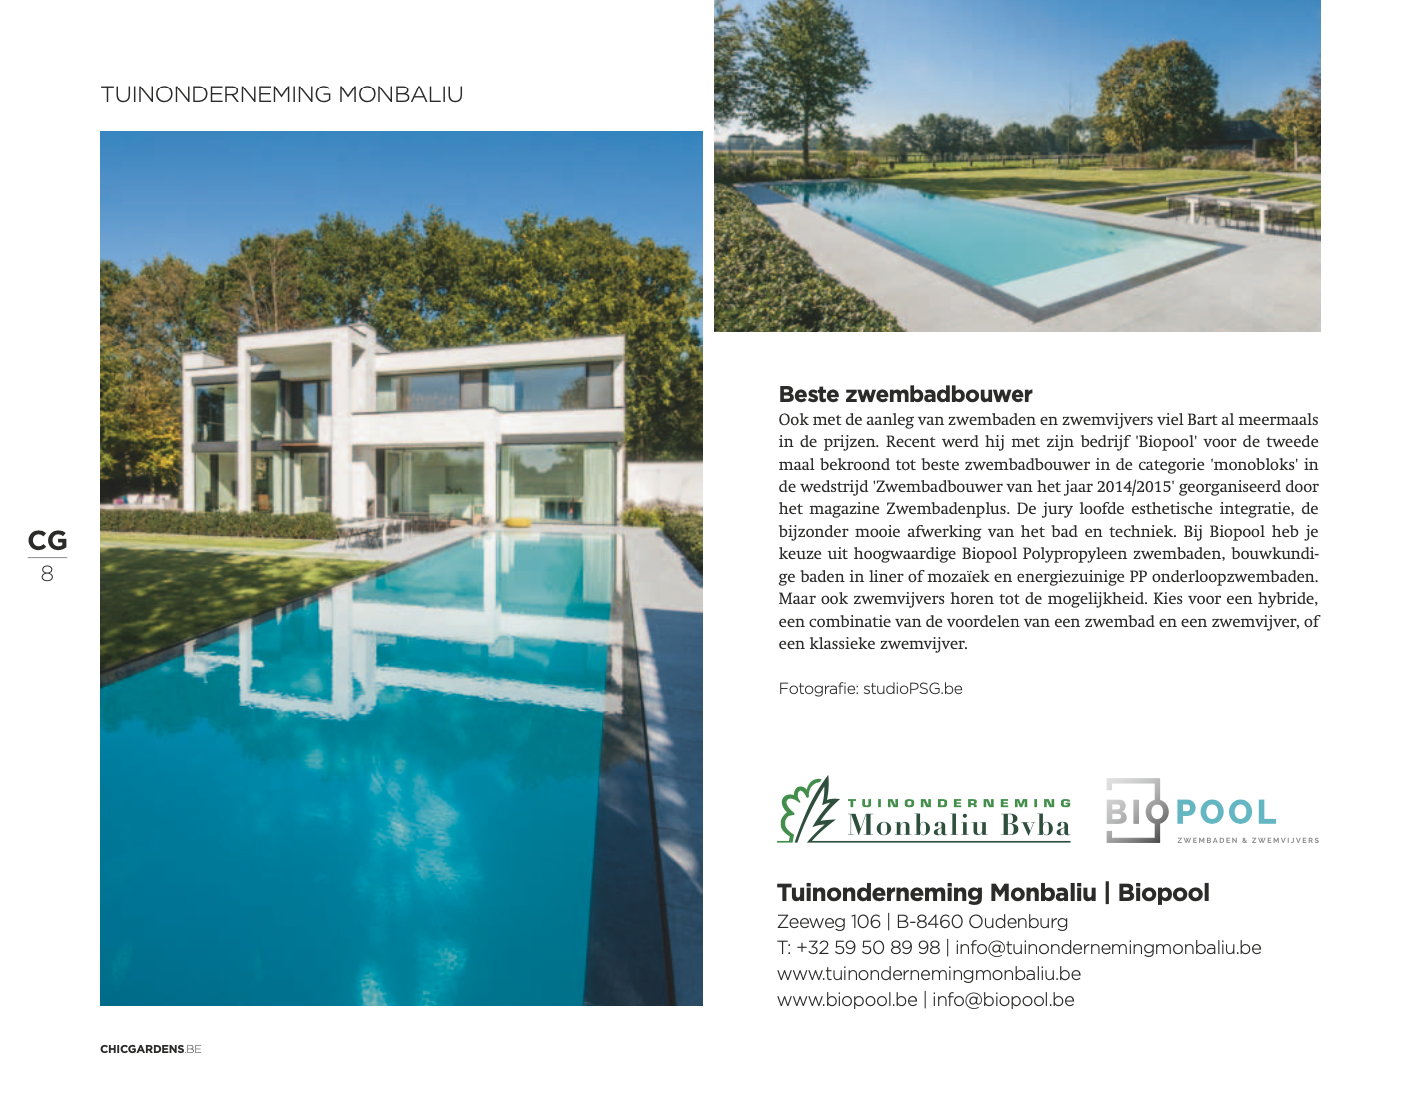 Afbeelding nieuwsitem Magazine ‘Concept gardens’ – bijlage regio West-Vlaanderen